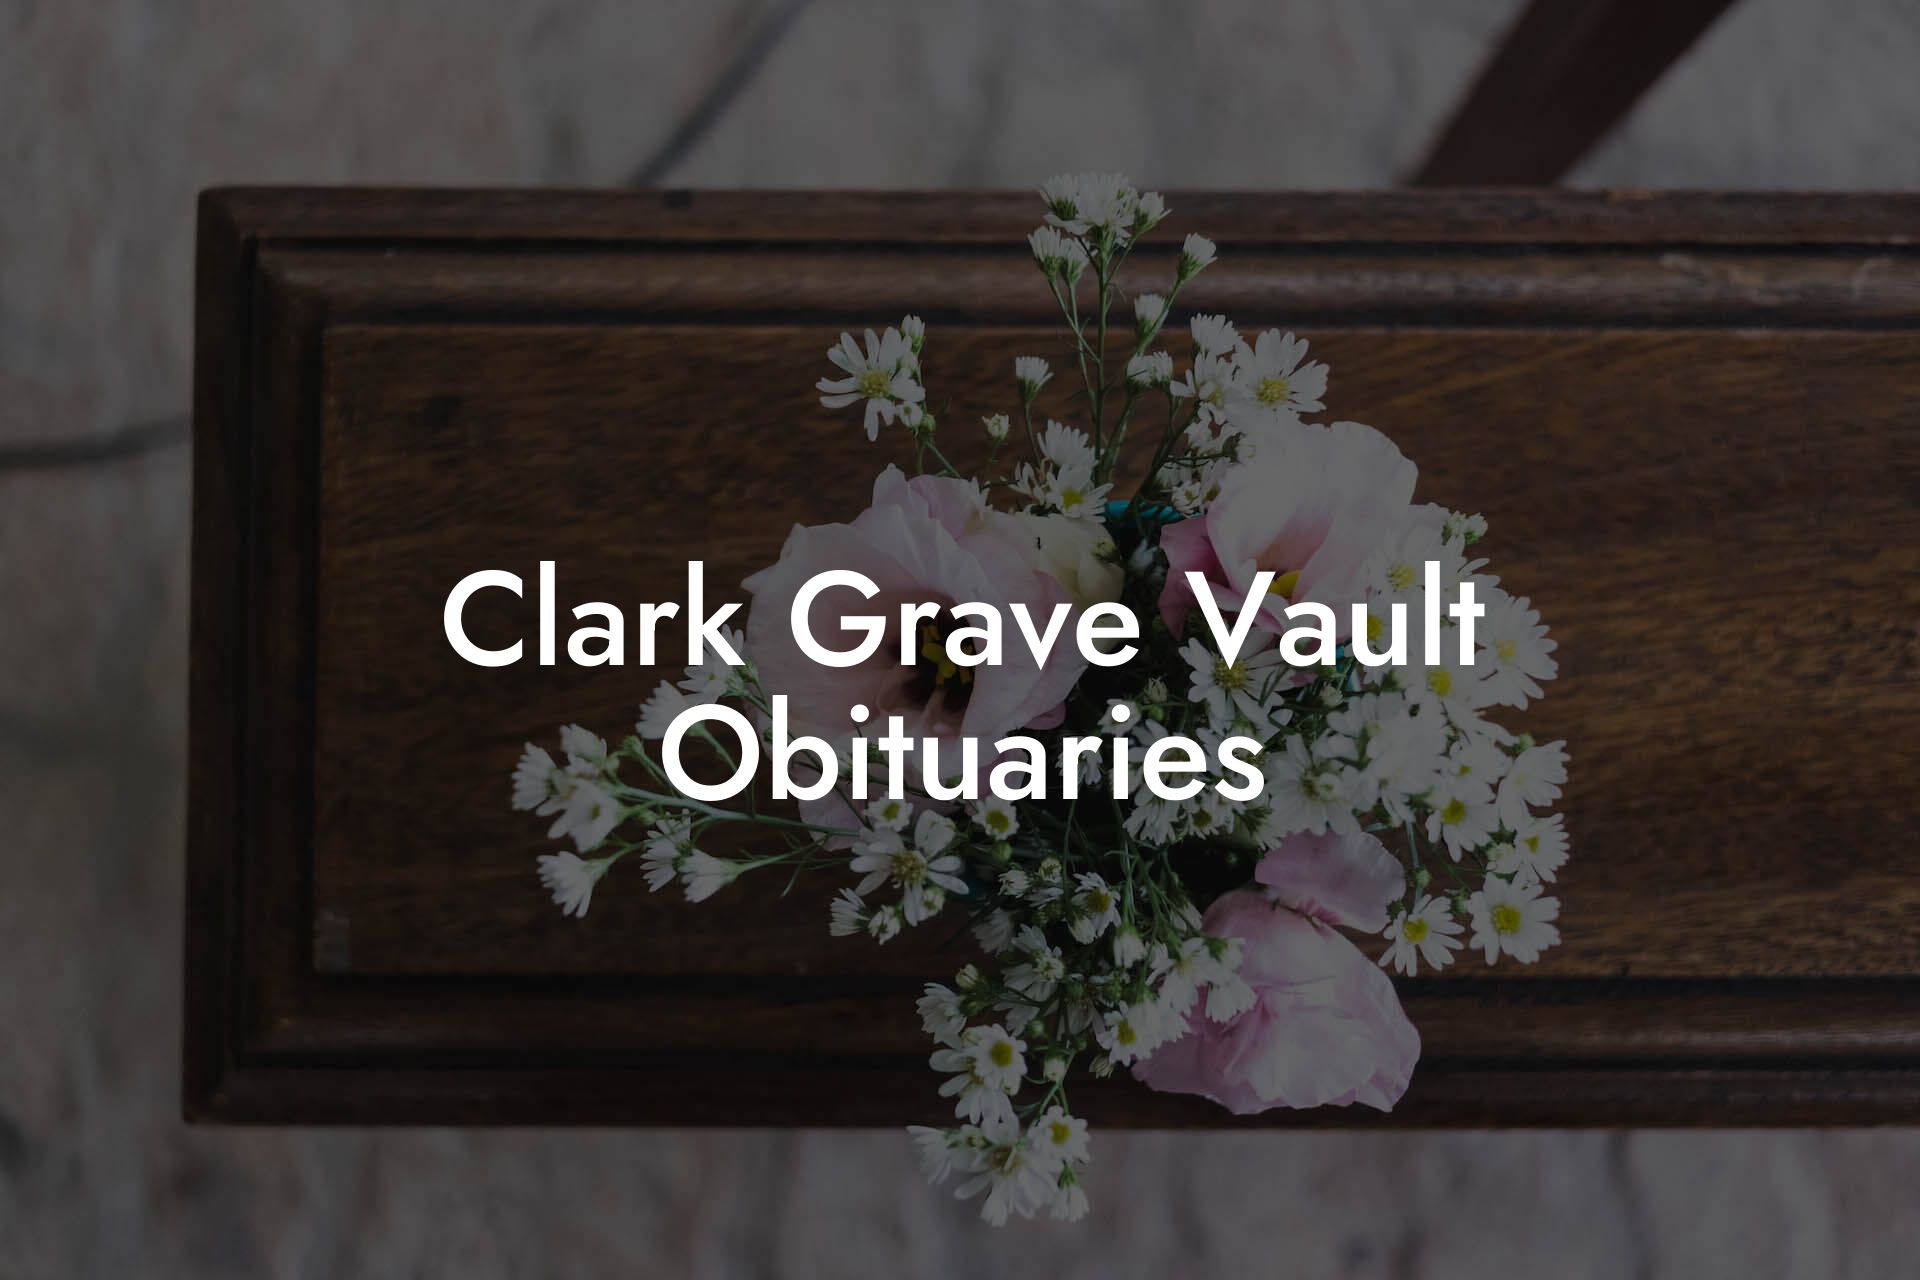 Clark Grave Vault Obituaries